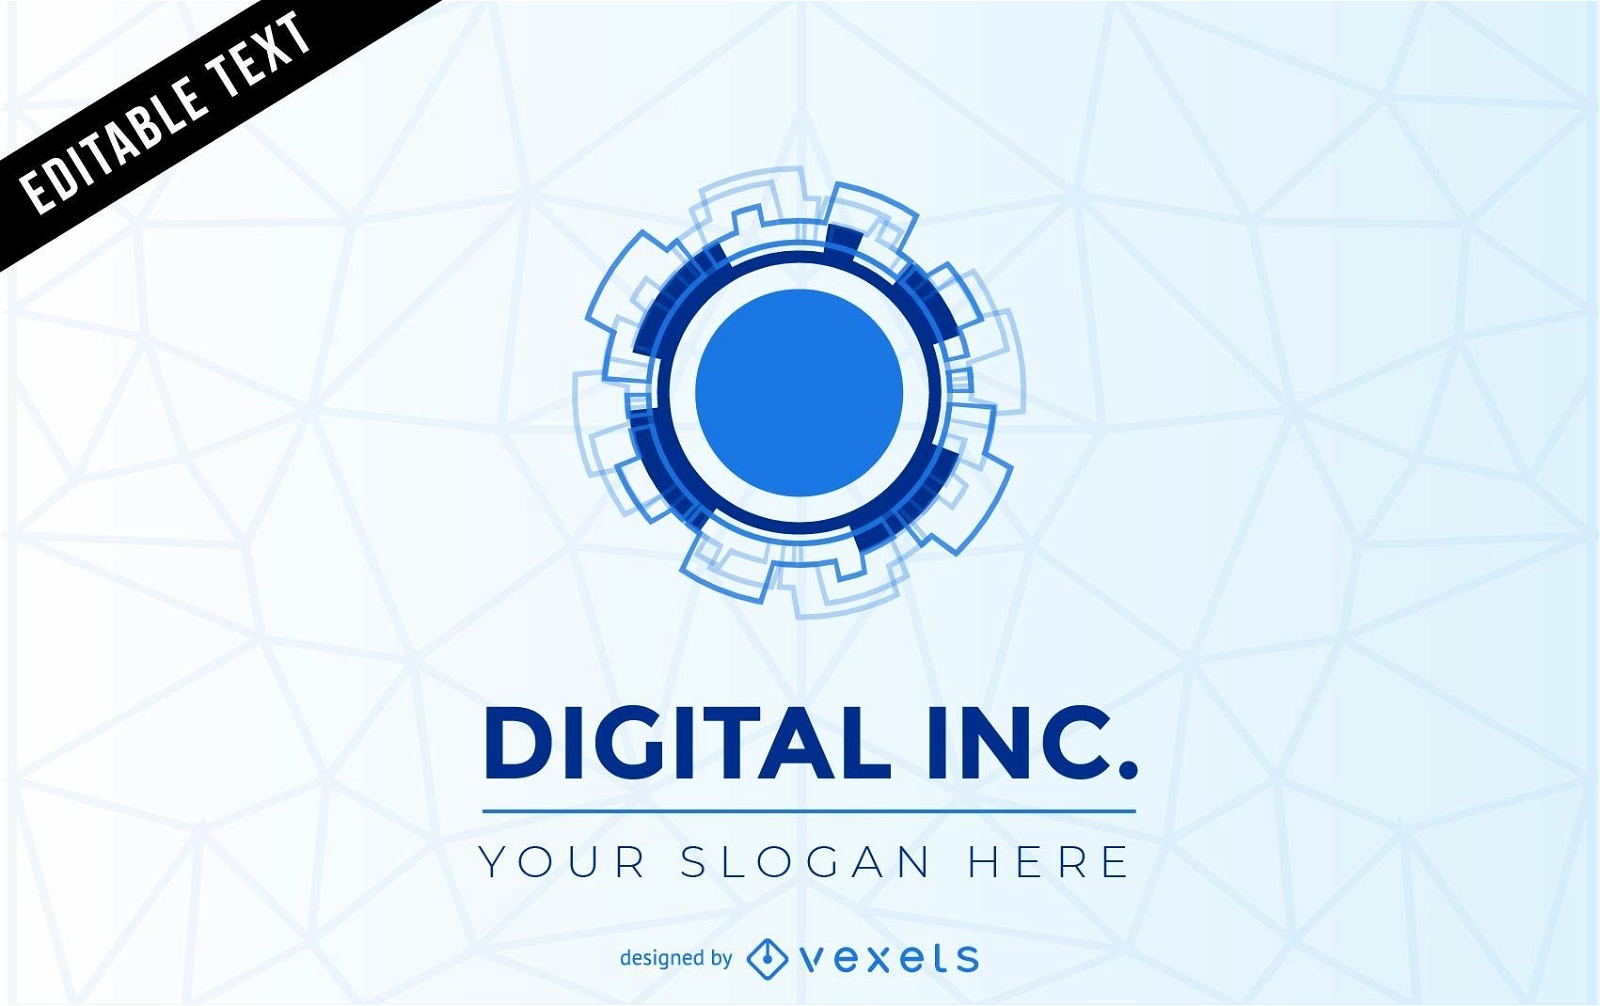 Plantilla de logotipo digital inc